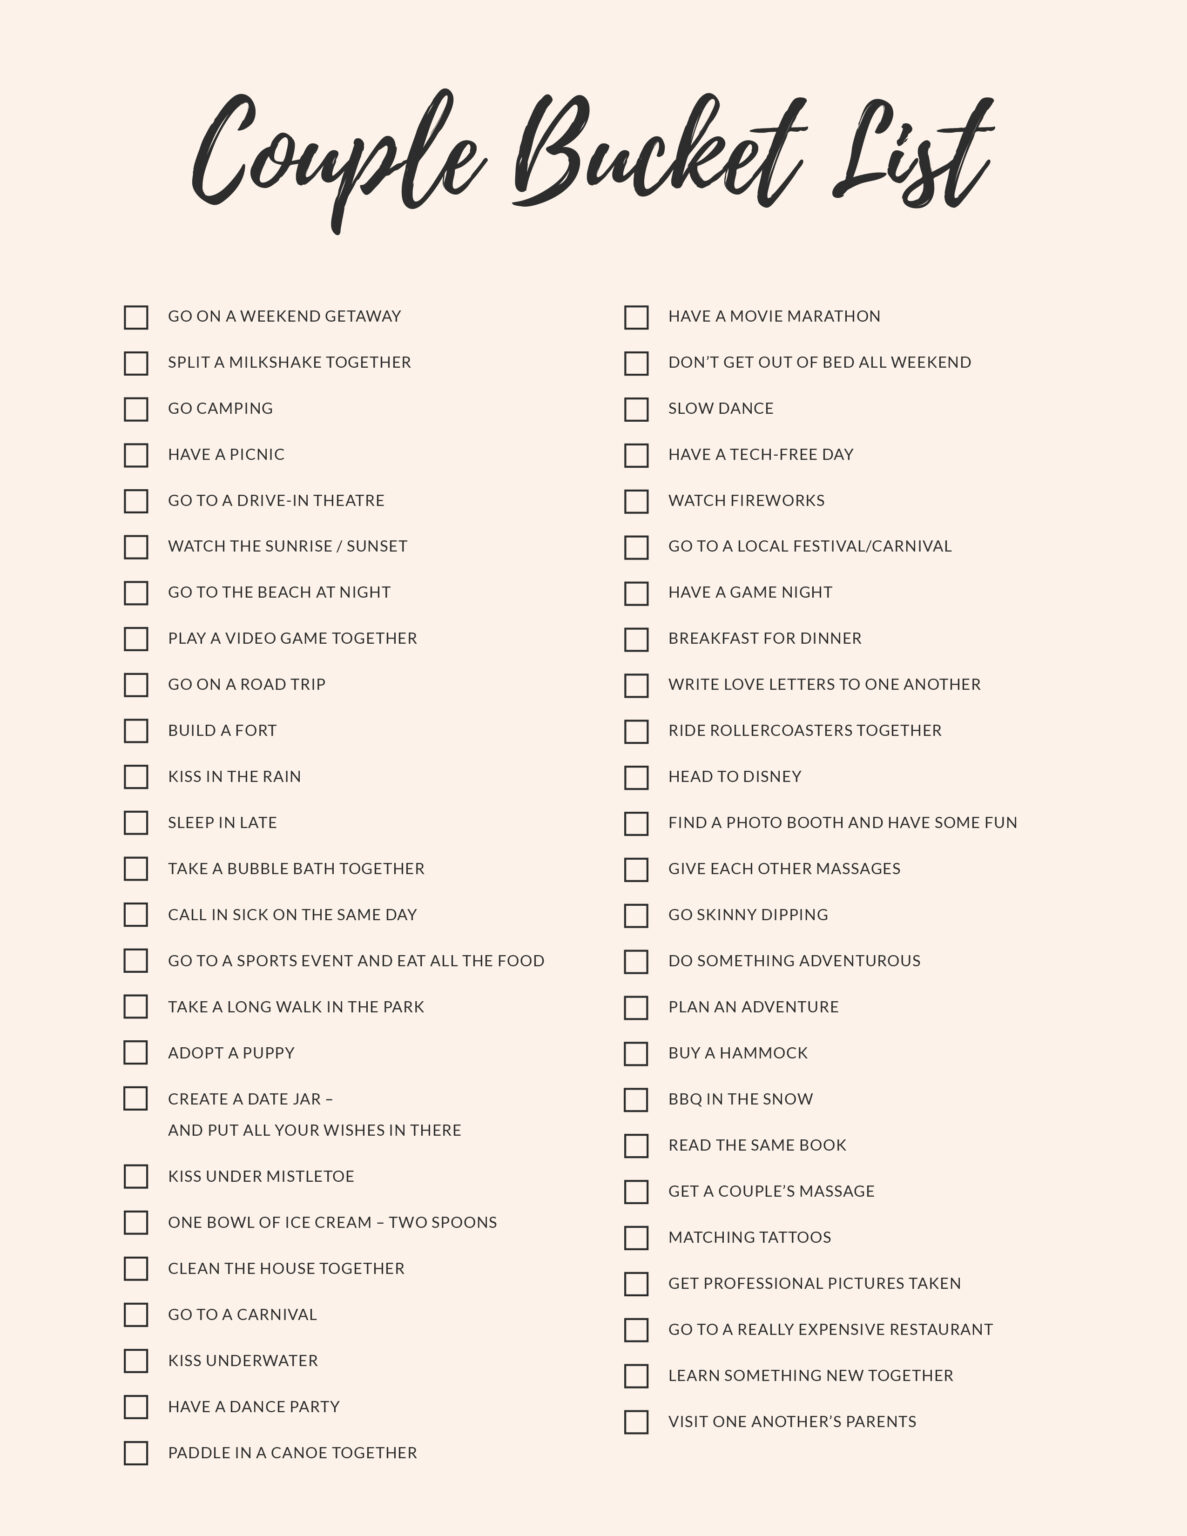 50 Couple Bucket List Ideas